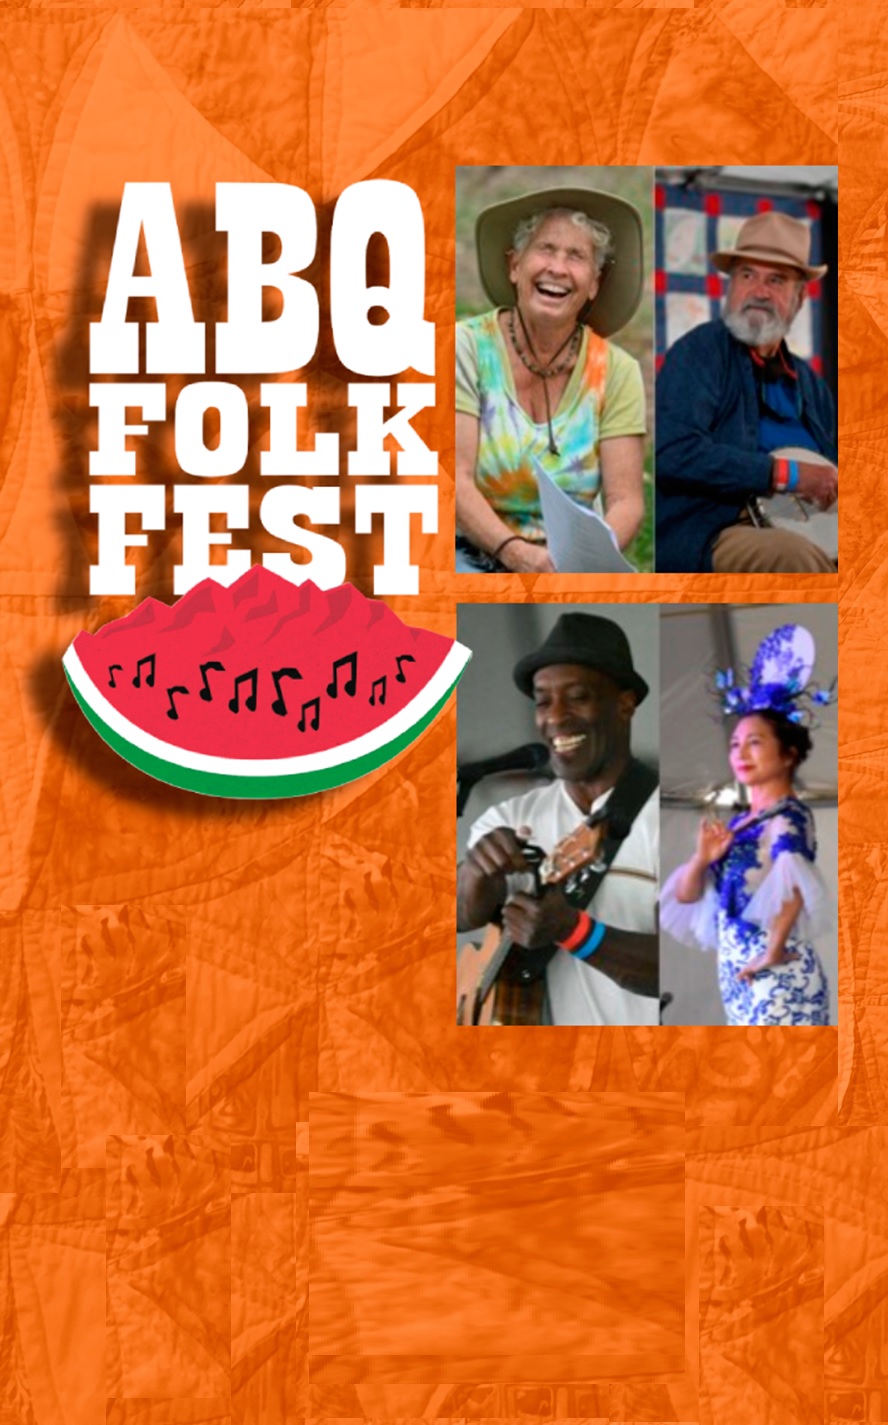 The Albuquerque Folk Festival